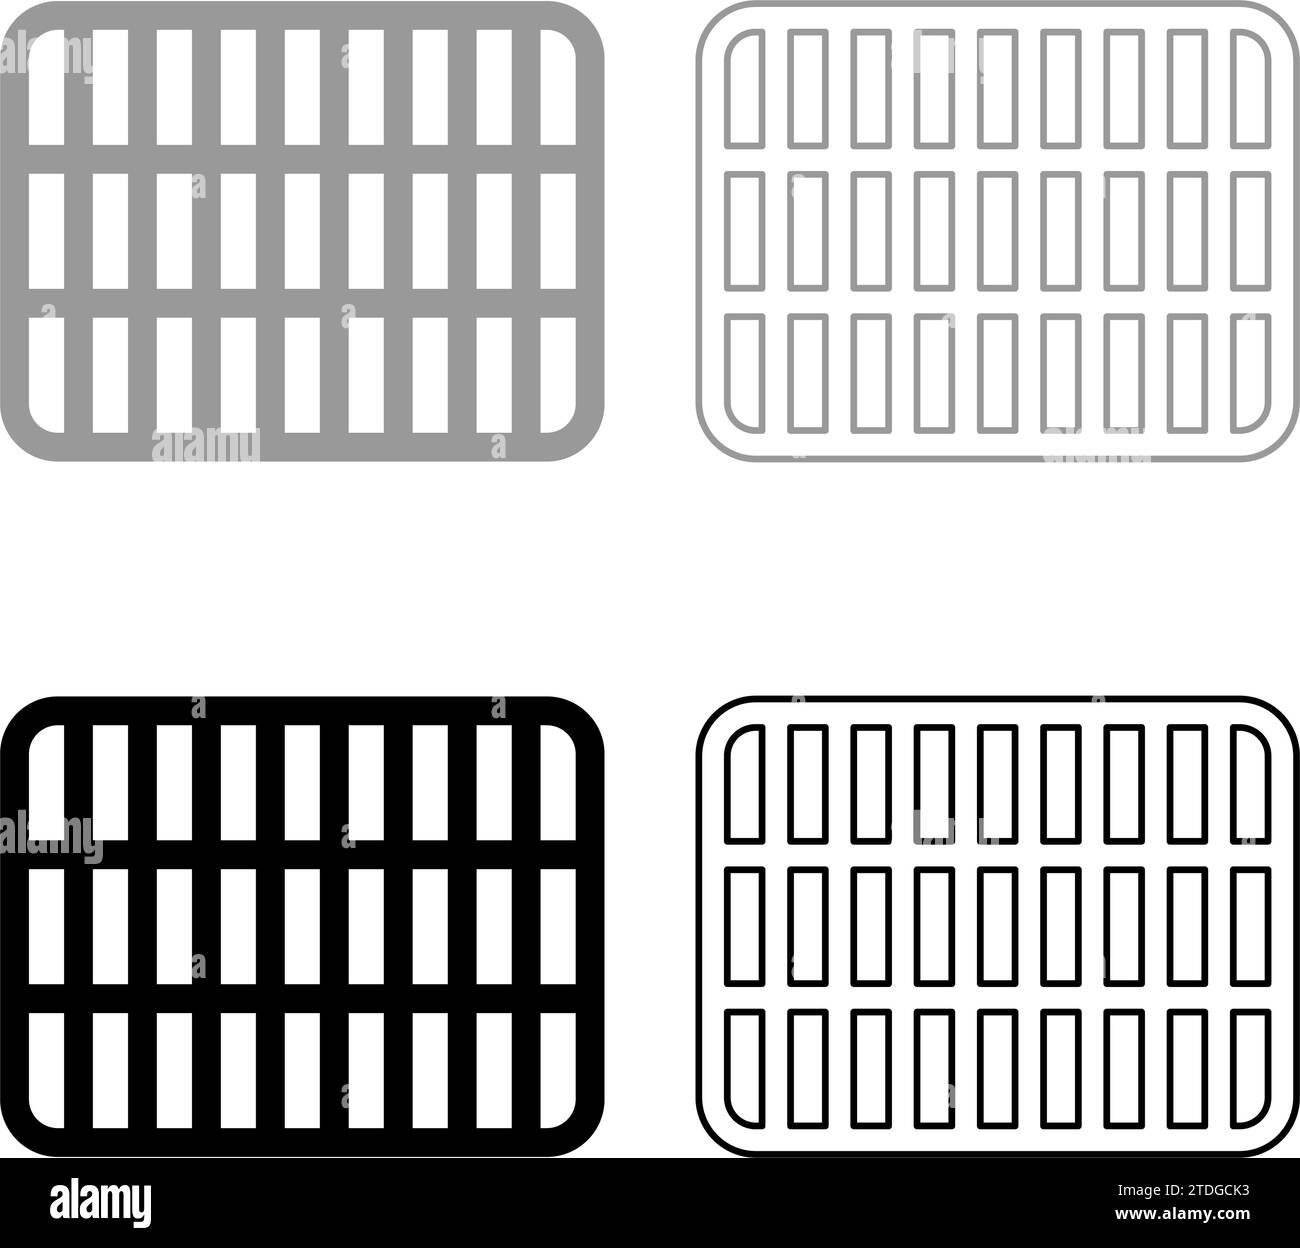 Grille de grille treillis treillis treillis treillis grillage grill barbecue grill surface de cuisson forme rectangulaire arrondi ensemble icône gris noir image d'illustration vectorielle Illustration de Vecteur